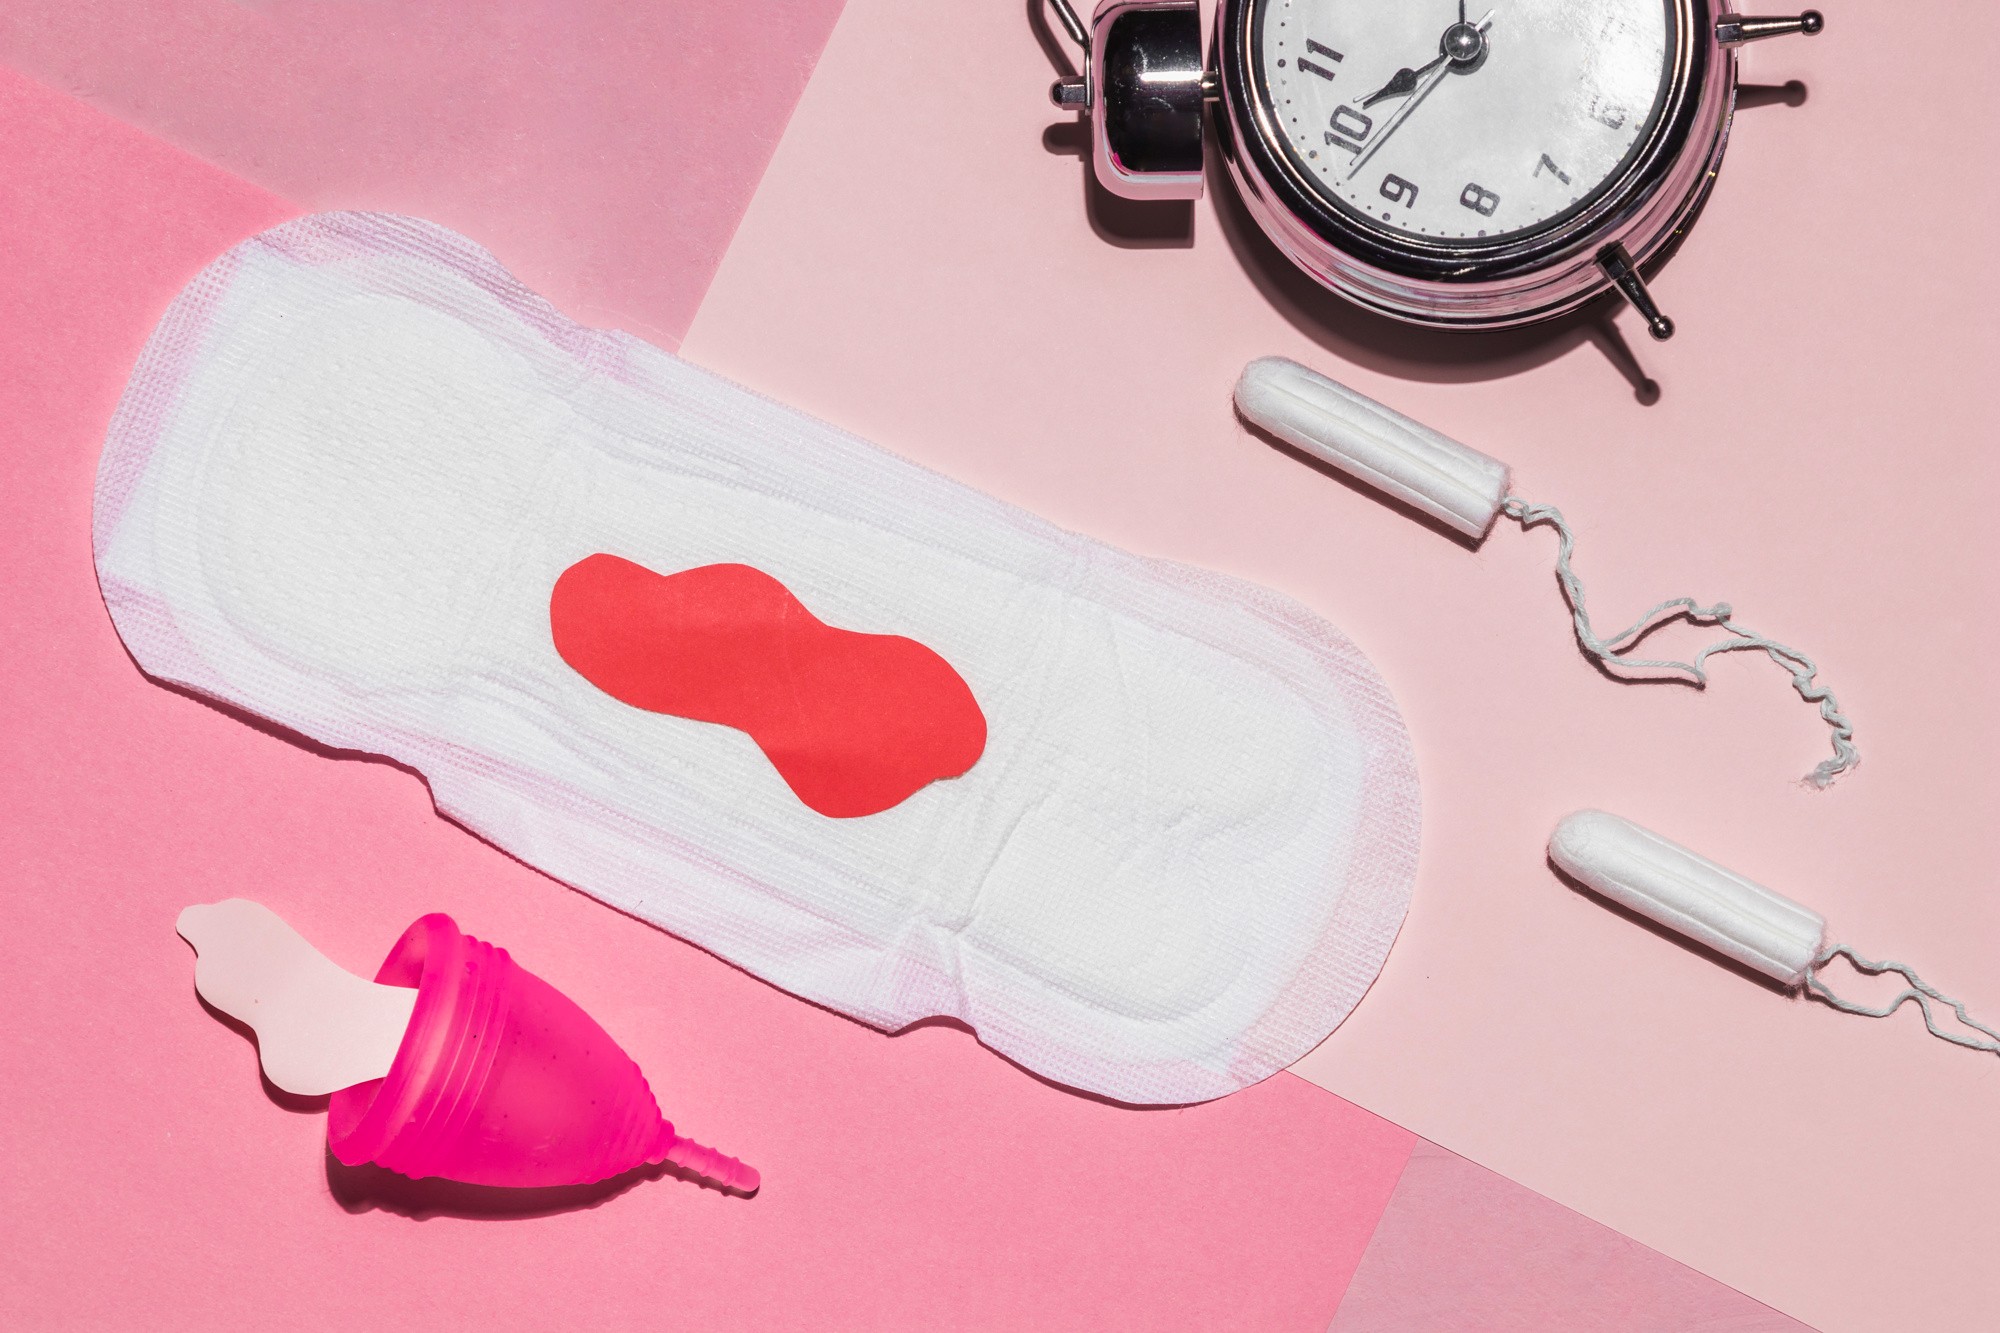 5 coisas pra observar no seu ciclo menstrual